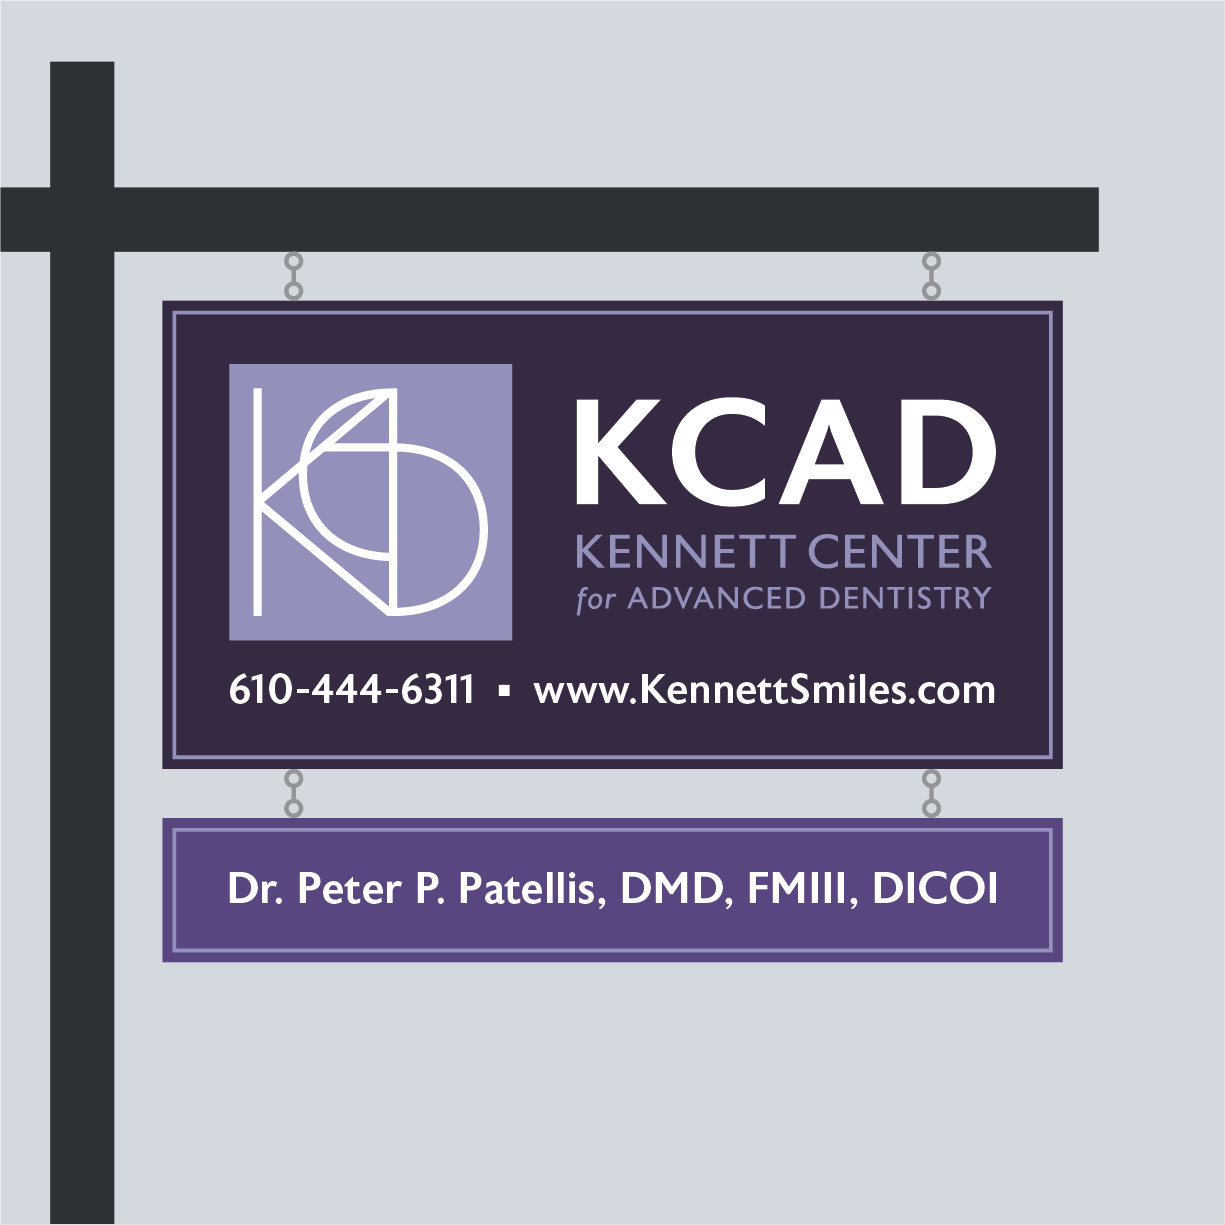 KCAD exterior sign concept